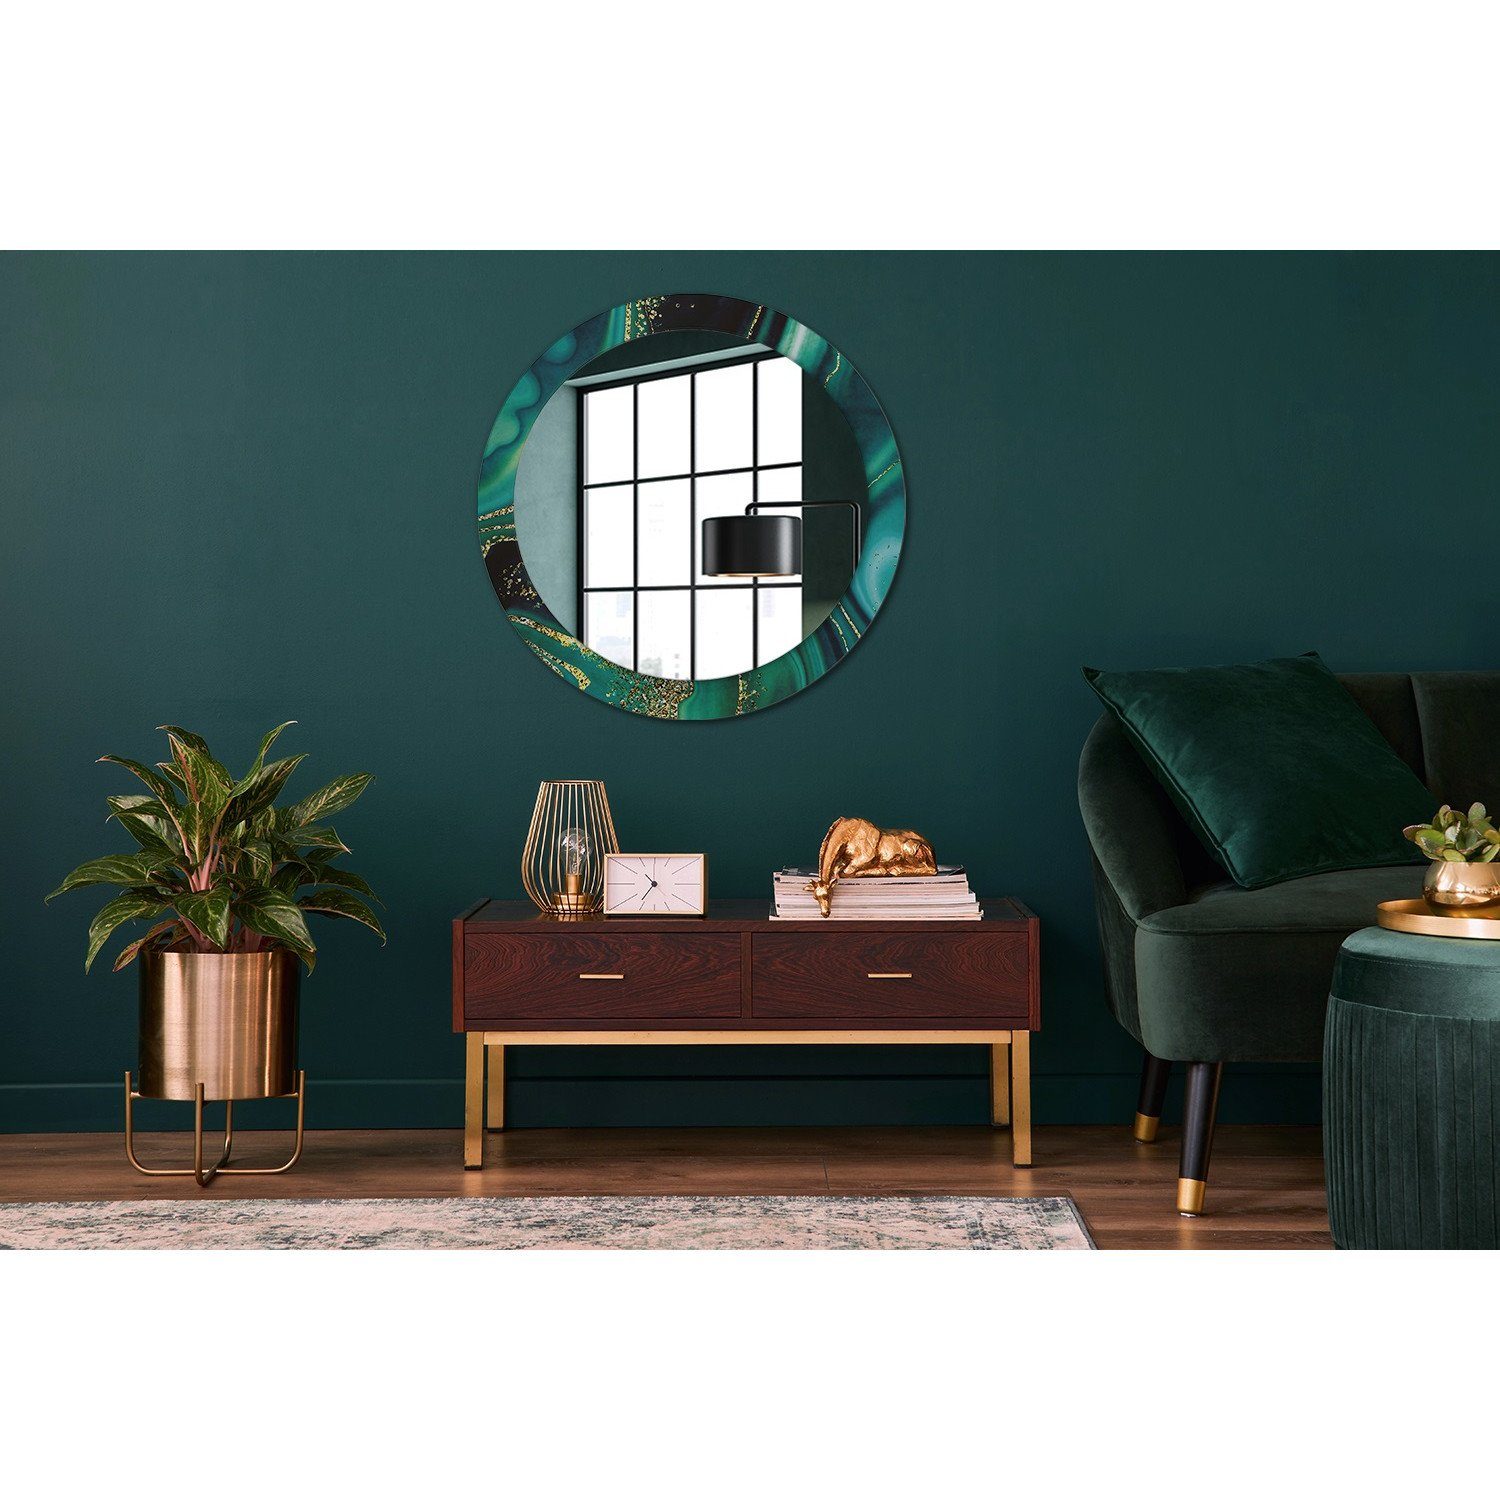 Tulup Badspiegel Rund: Spiegel (Hängespiegel, Grün Aufdruck) mit Design Badspiegel Ø80cm Wandmontage Deko Rund mit Smaragd Aufdruck